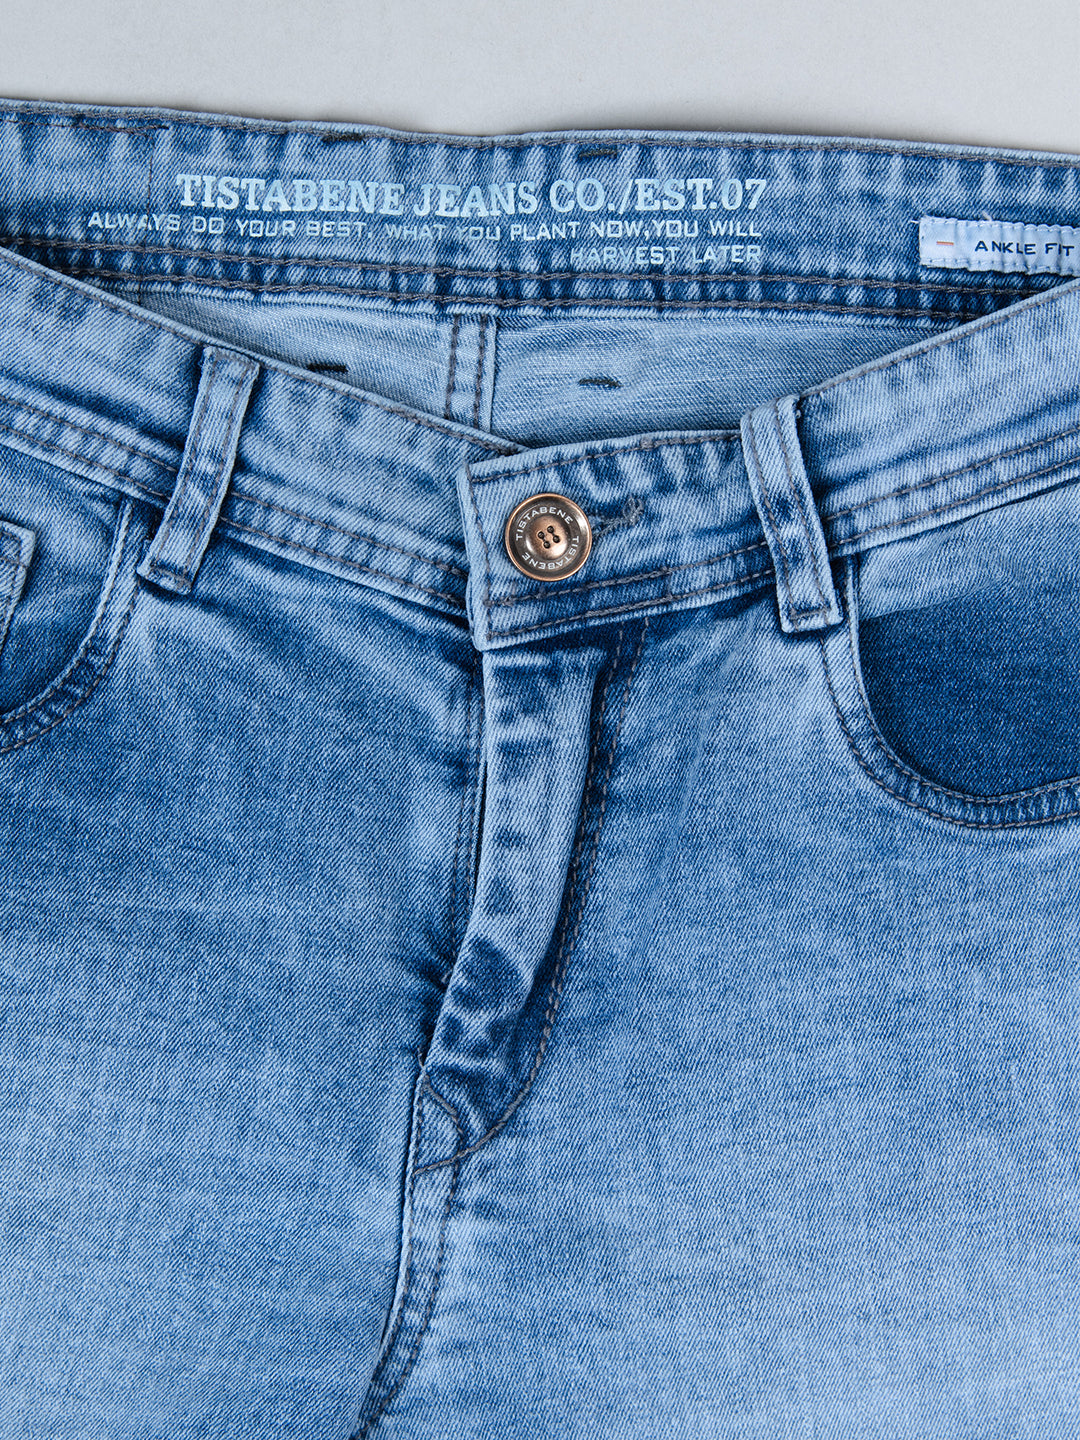 Mens Denim Jeans - Indigo Light - At Best Price | Fabrilife